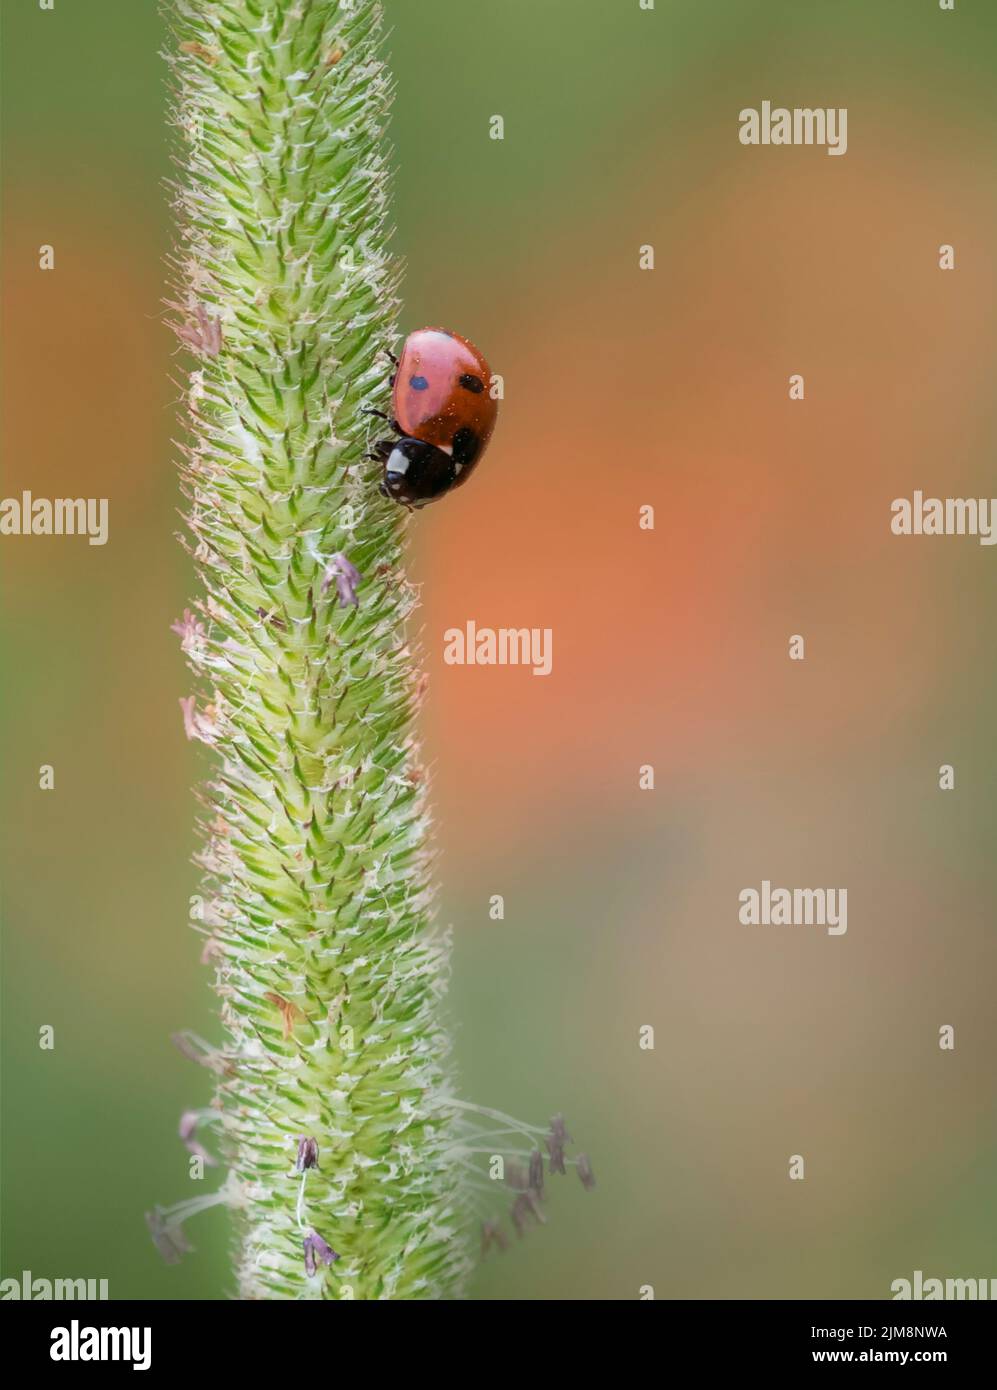 Ein Marienkäfer mit 7 Punkten (Coccinella septempunctata), der auf einem Graskopf ruht und im Hintergrund ein unfokussiertes Mohnfeld aufweist Stockfoto